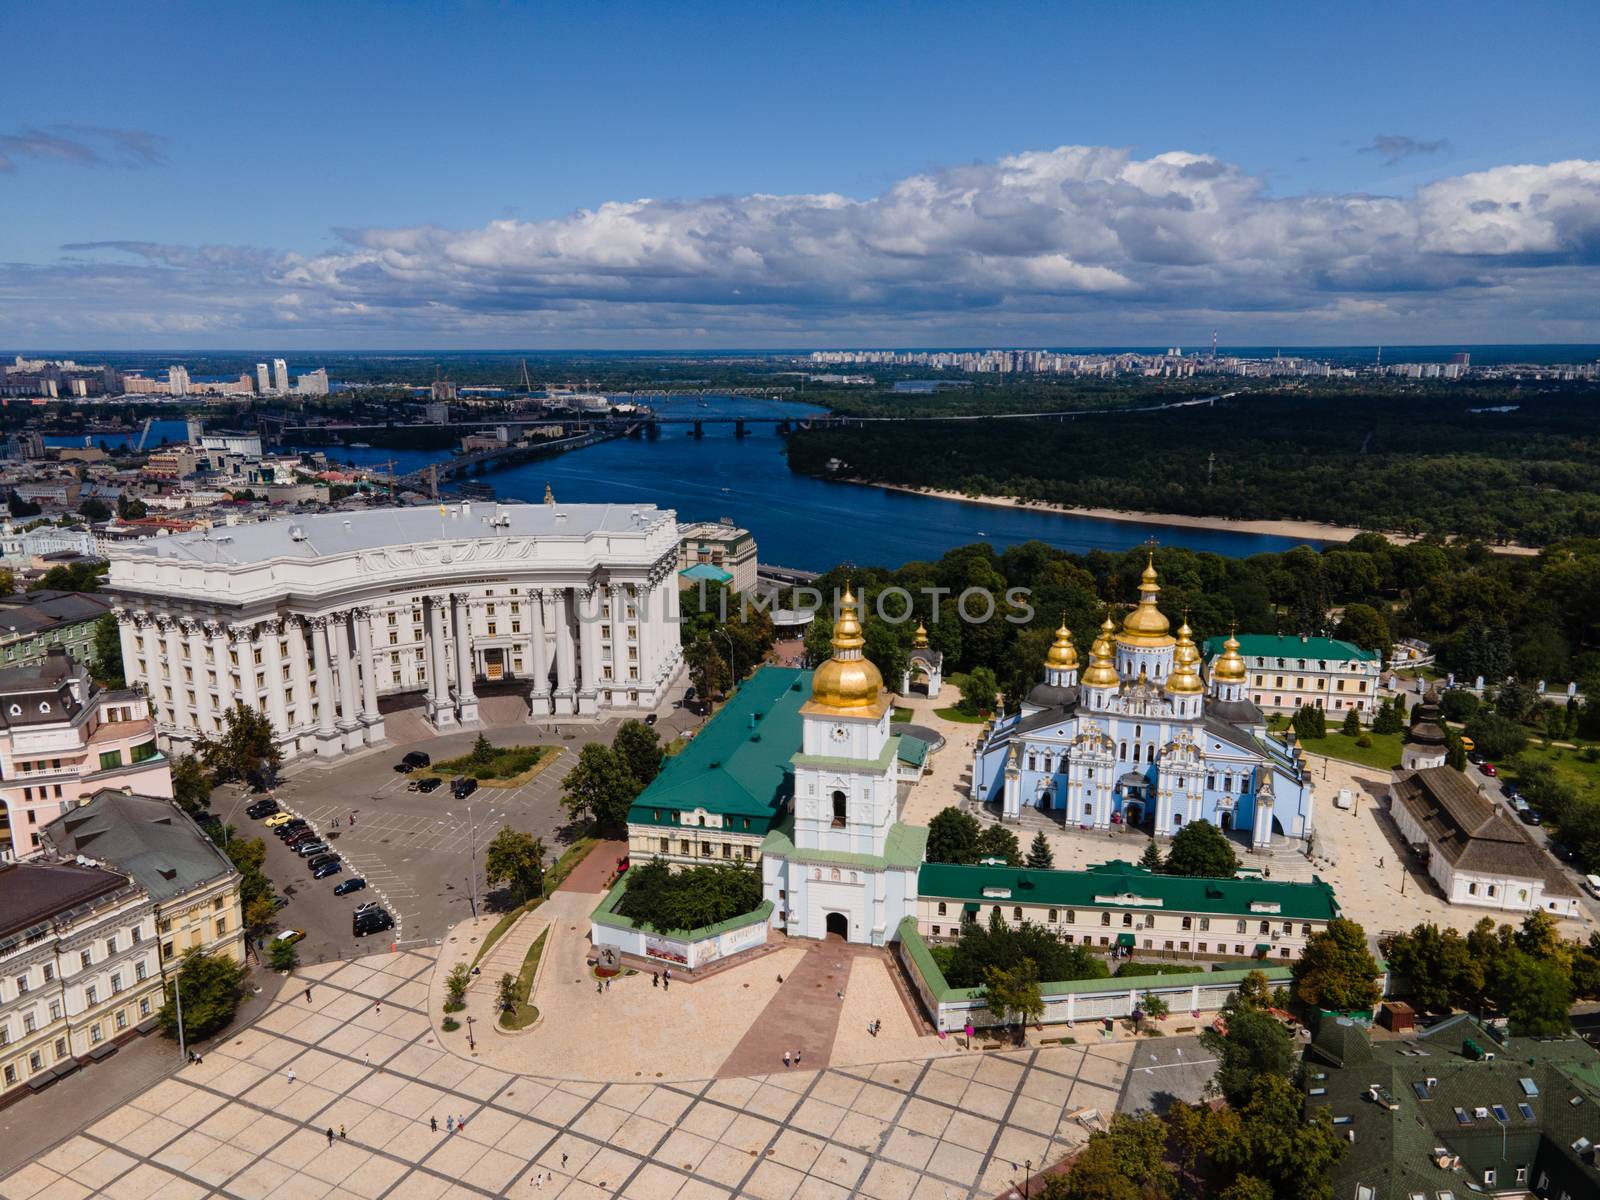 St. Michael's Golden-Domed Monastery in Kyiv, Ukraine.